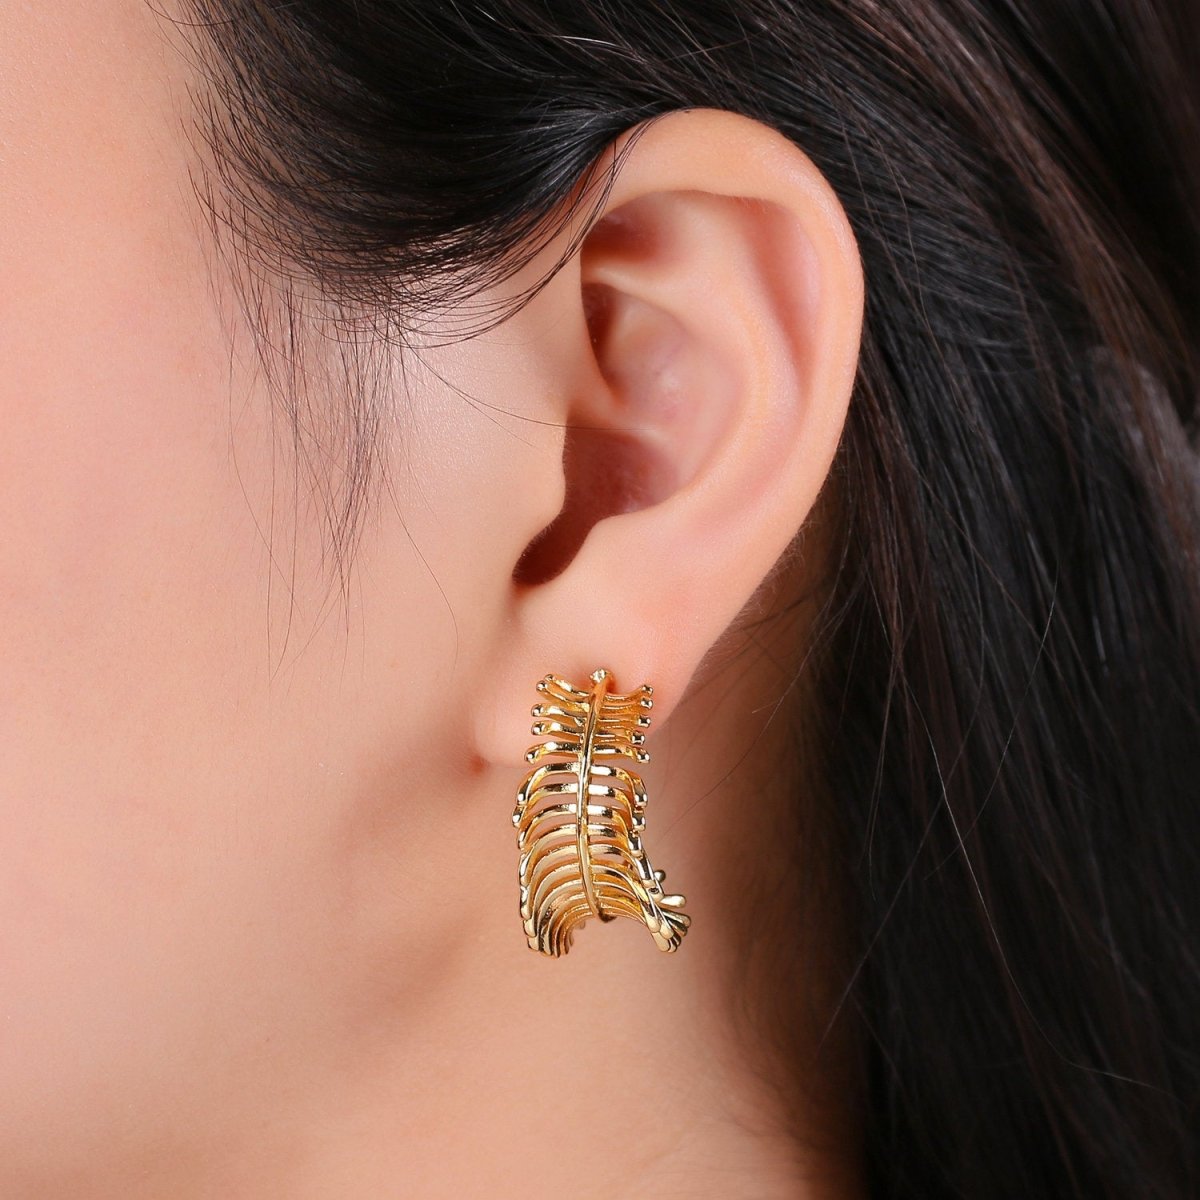 Gold Feather Hoop Earrings Boho Gold Leaf Hoop Earrings Autumn Jewelry Festival Earrings Gift for Her Bohemian Earrings Big Hoop Earring Q-201 - DLUXCA